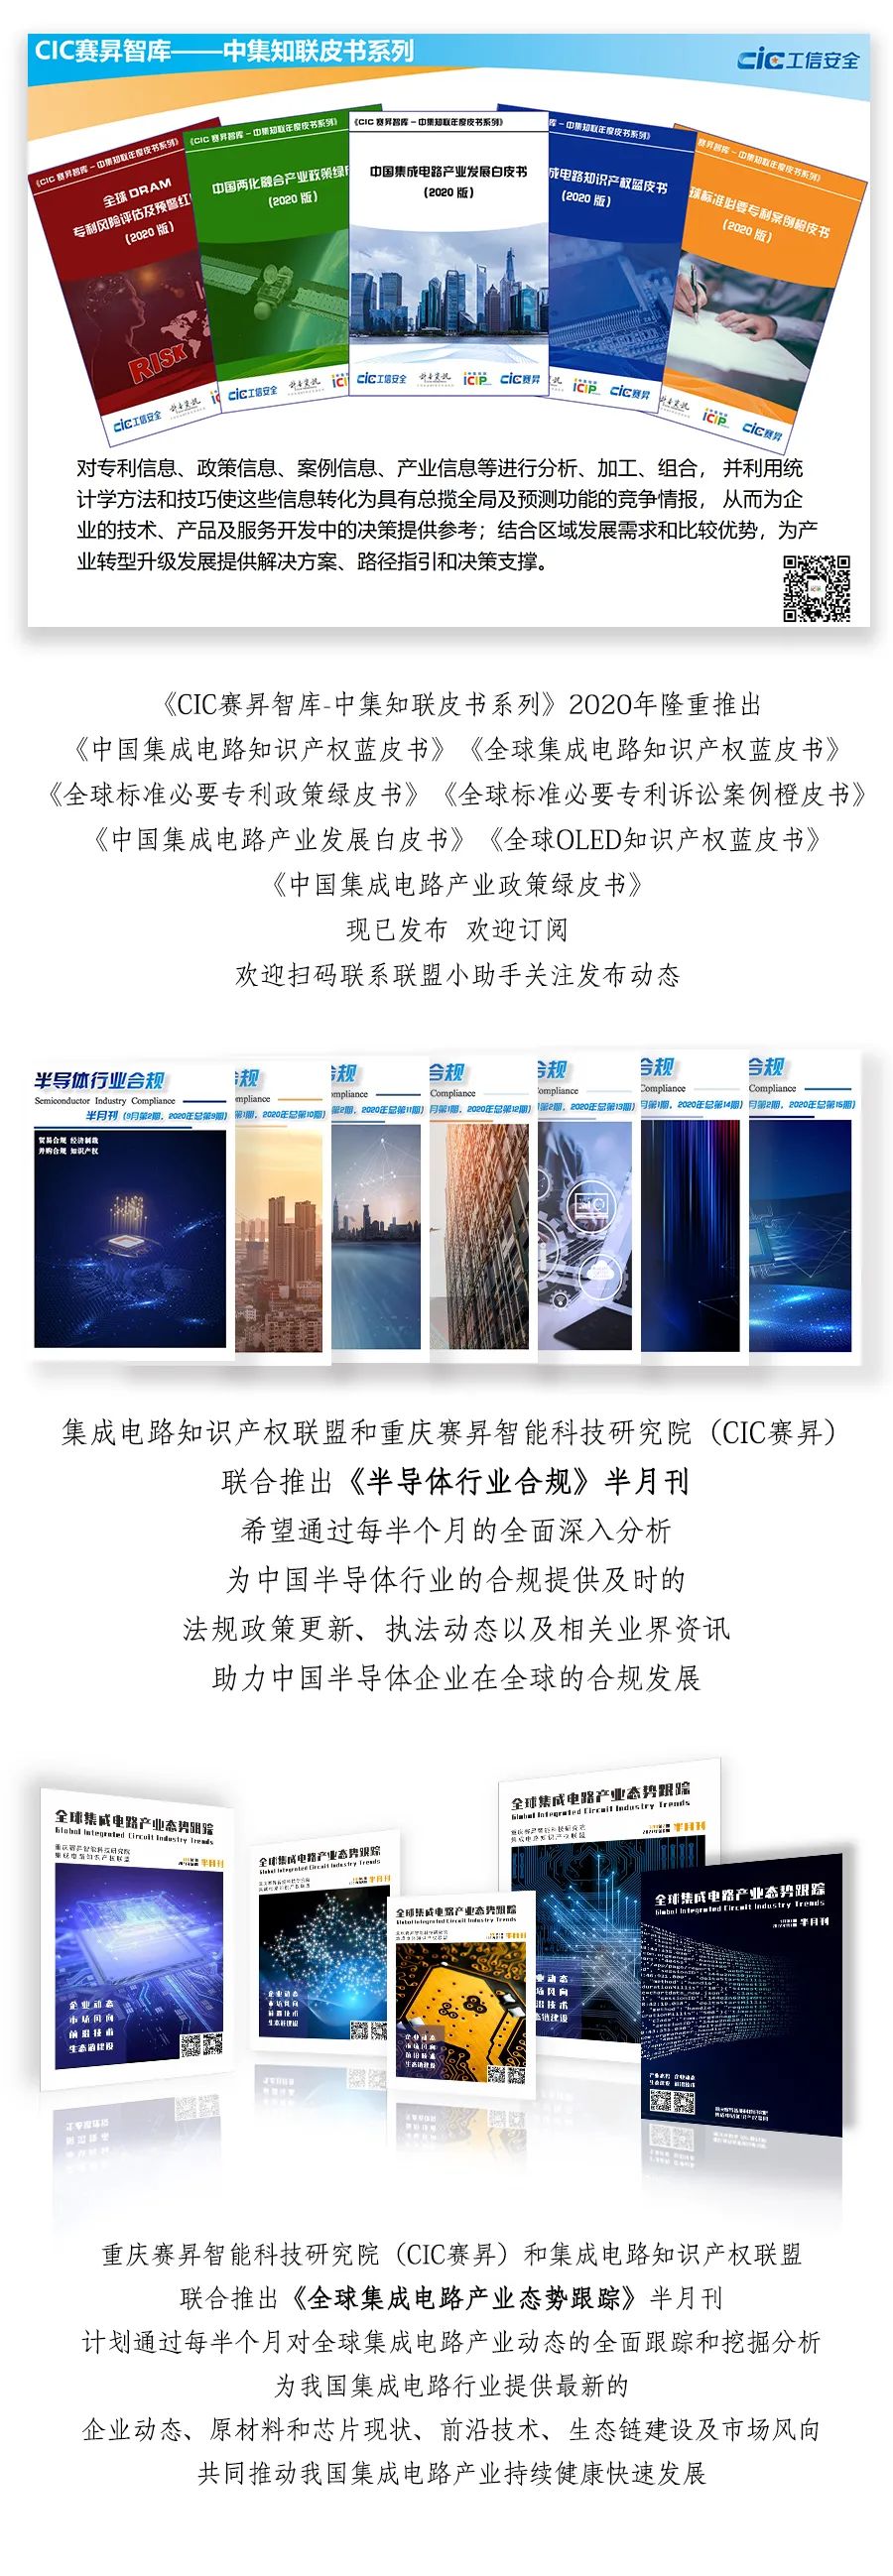 热烈欢迎重庆裕驰沄科网络科技有限公司加入联盟